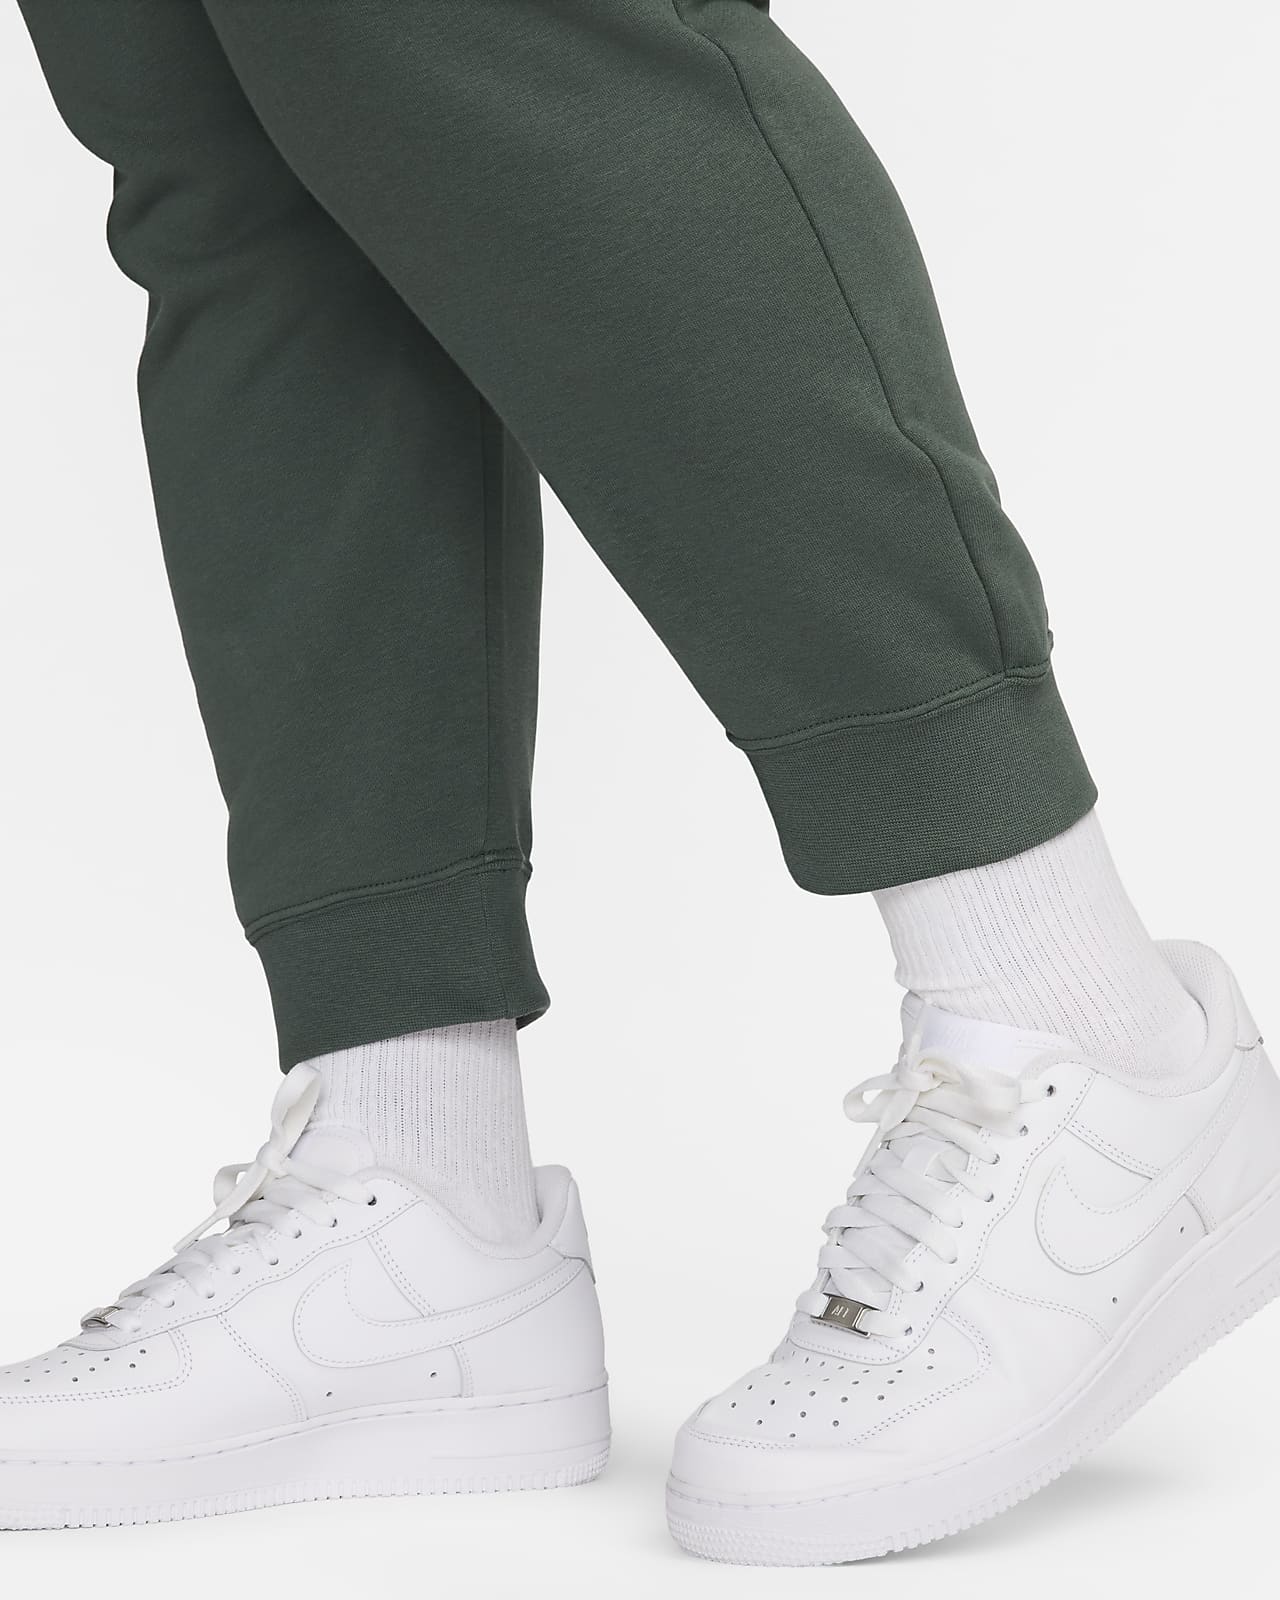 Nike Women's Club Fleece Sweatpants Pants Size 3XL (Gray) 836124